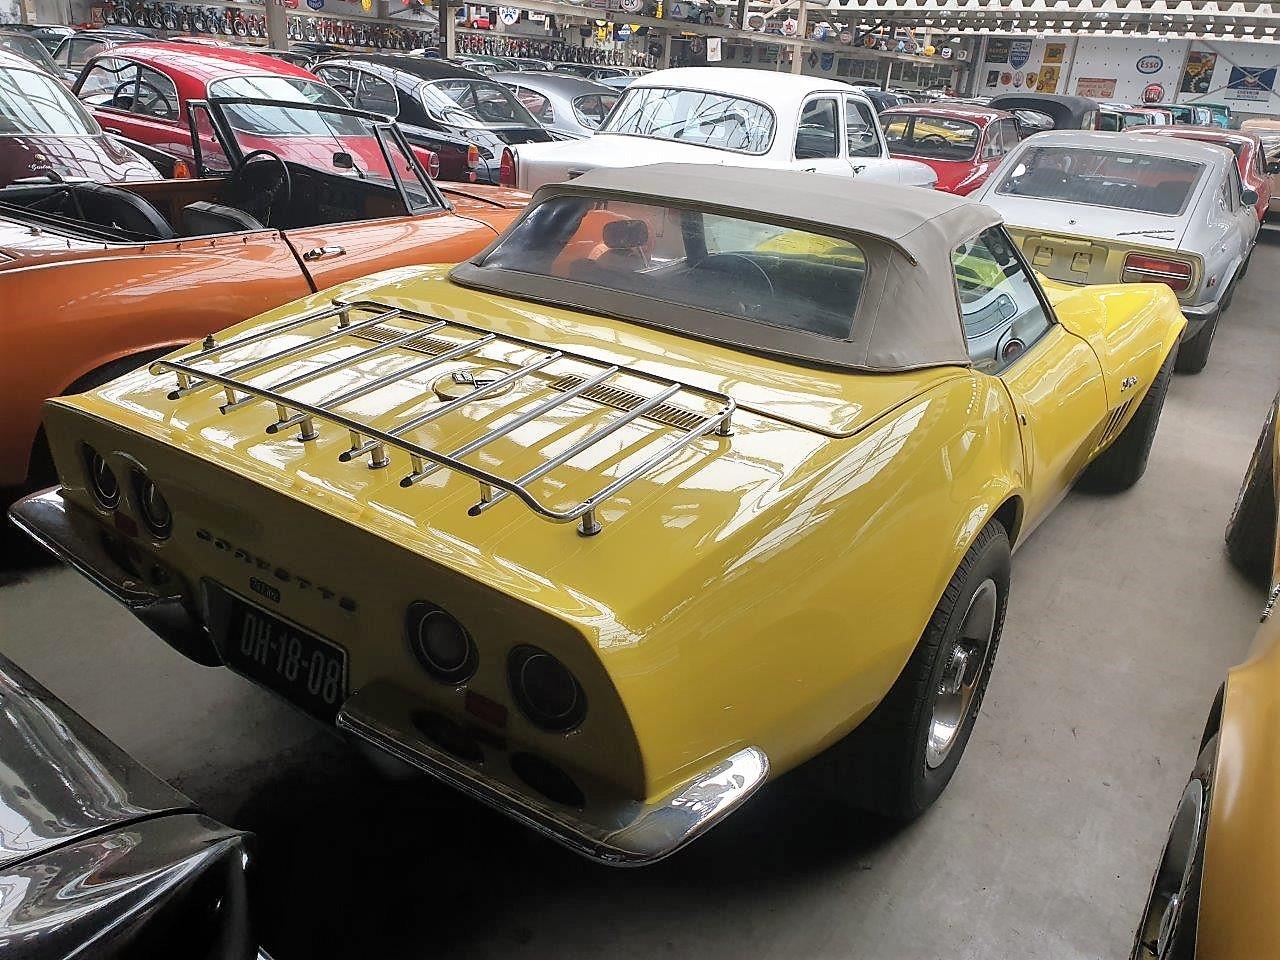 1969 Chevrolet Corvette  69 Cabrio Yellow